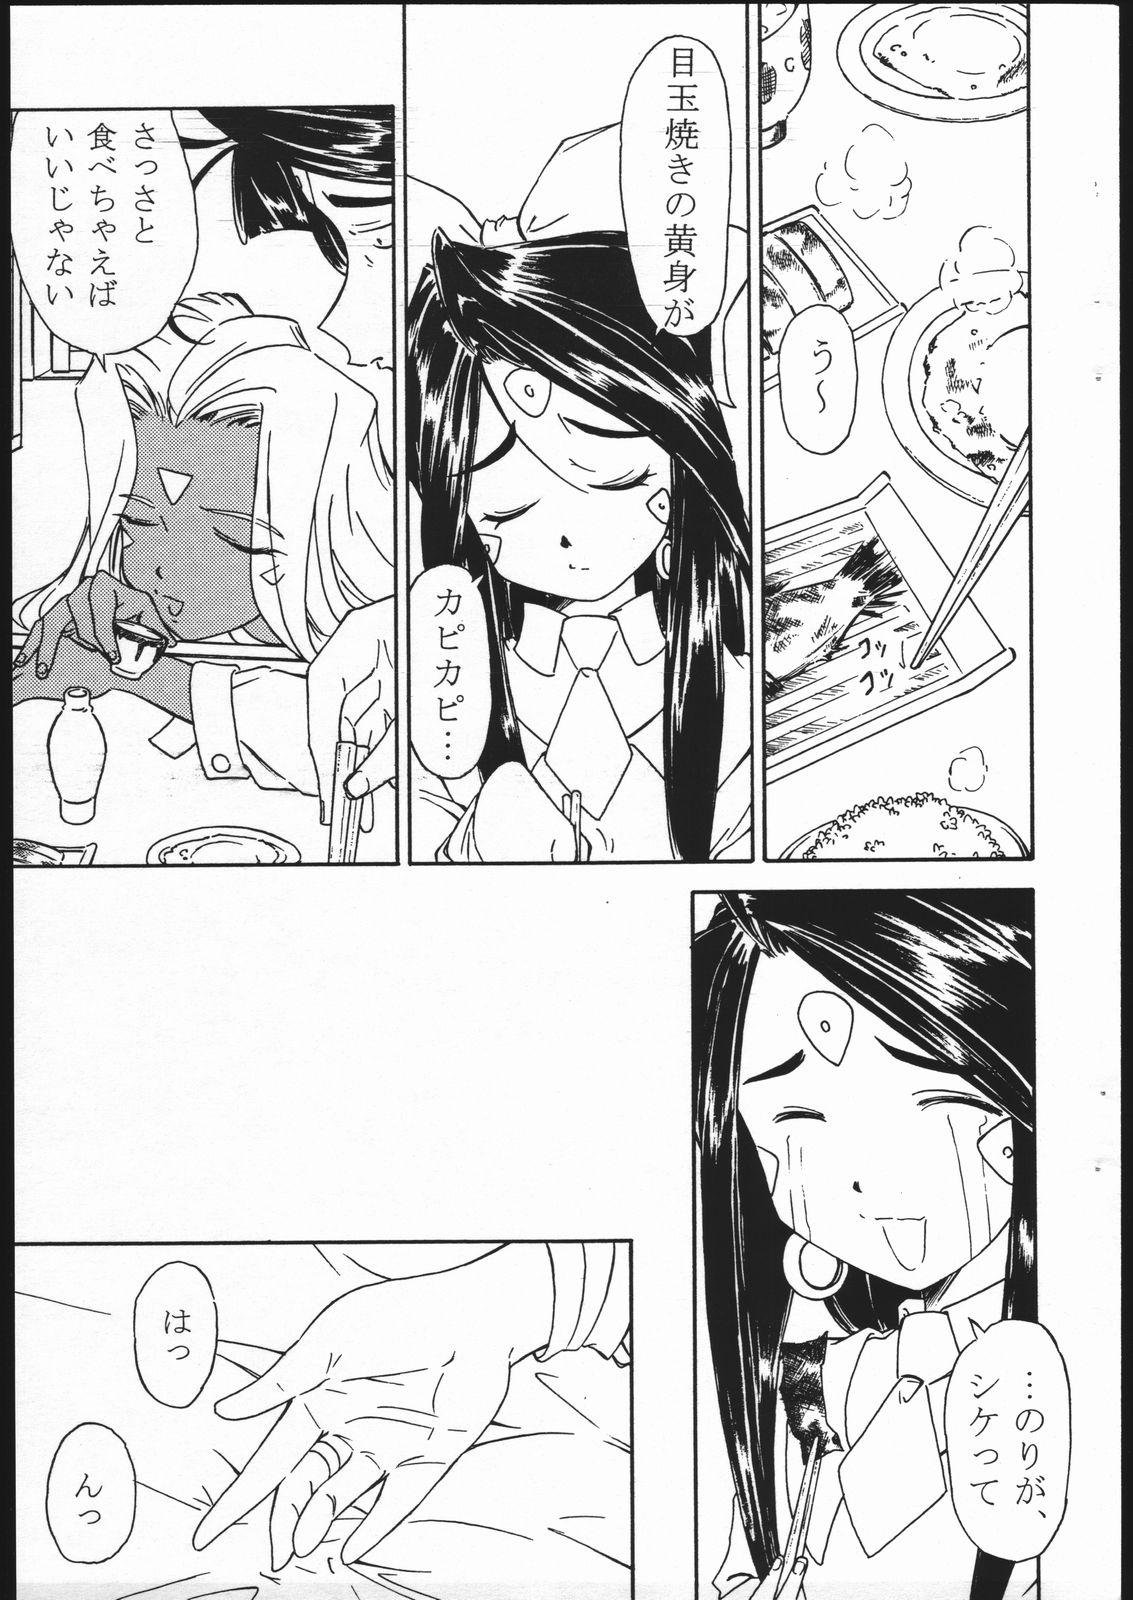 Fetish Ohayou Gozaimasu! Megami-sama! - Ah my goddess Rabuda - Page 4